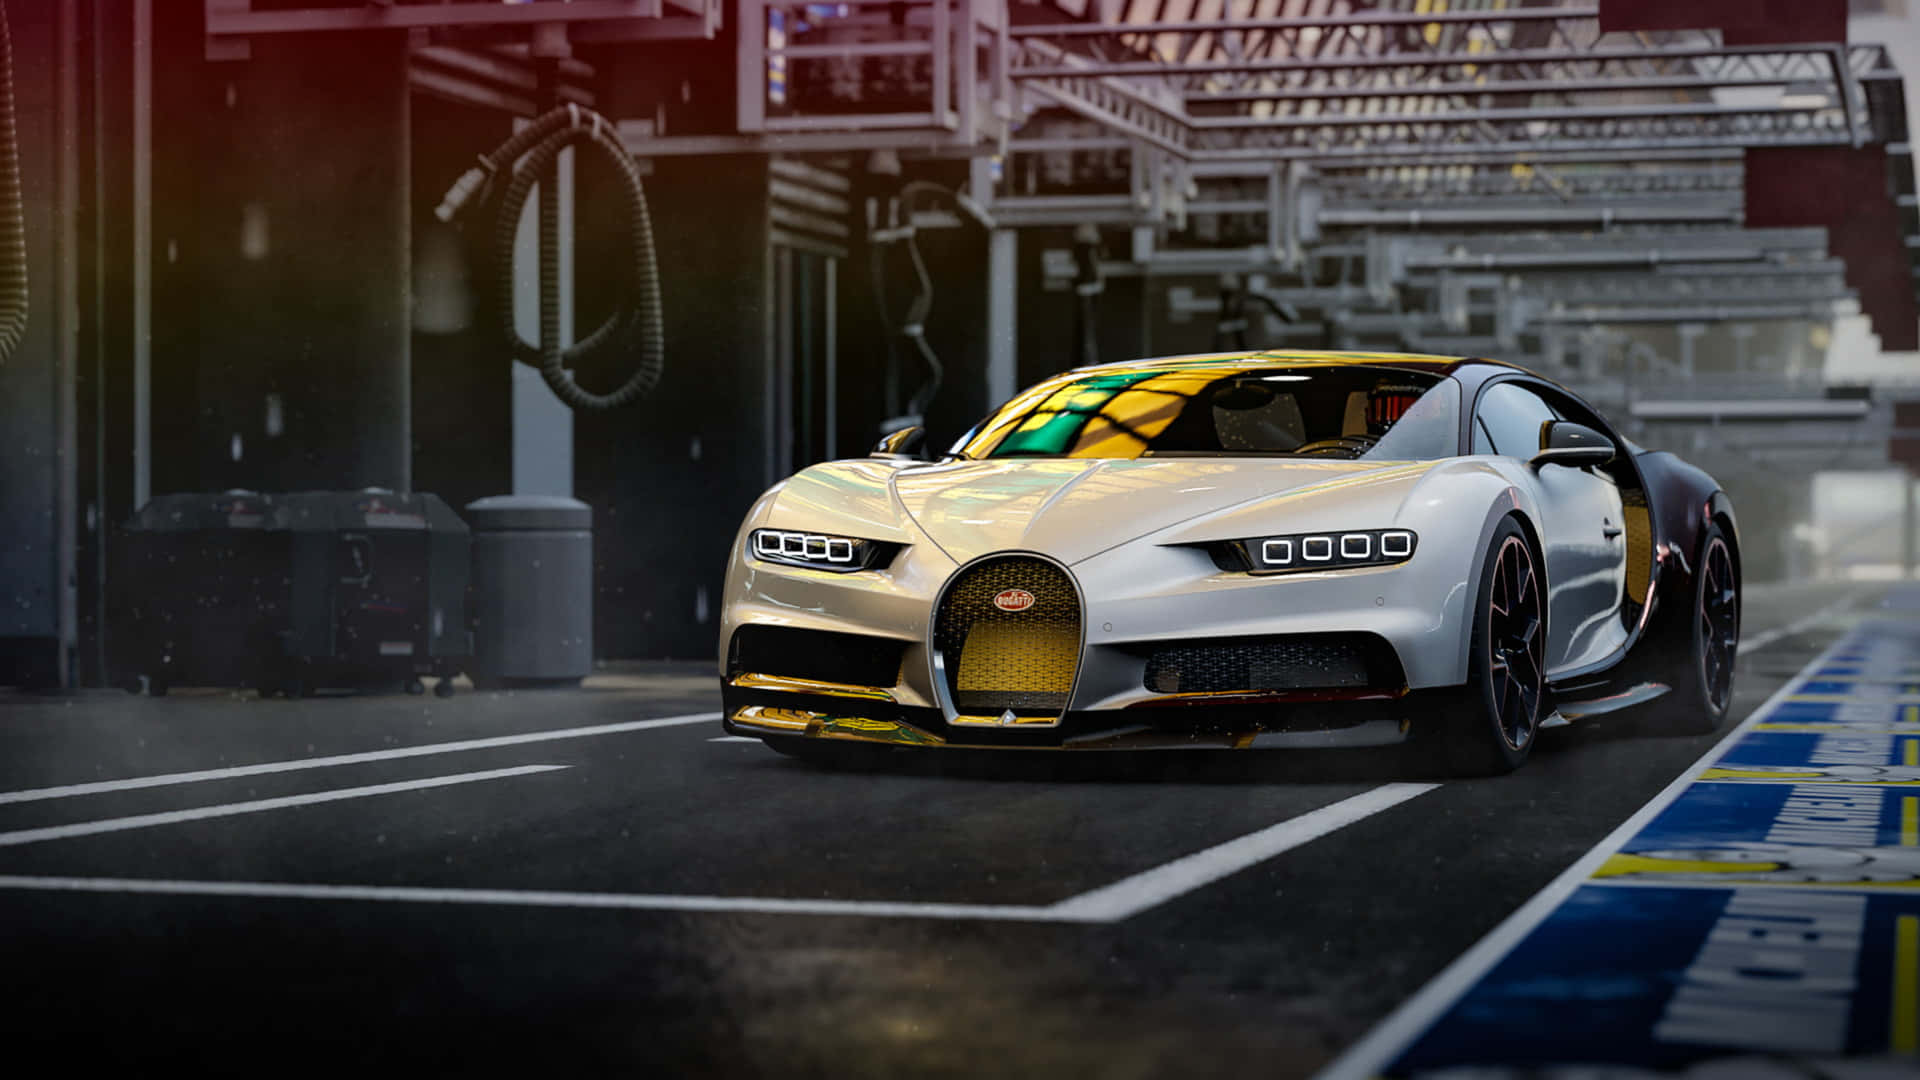 Erlebensie Unübertroffene Geschwindigkeit Und Luxus Mit Dem Bugatti 4k. Wallpaper